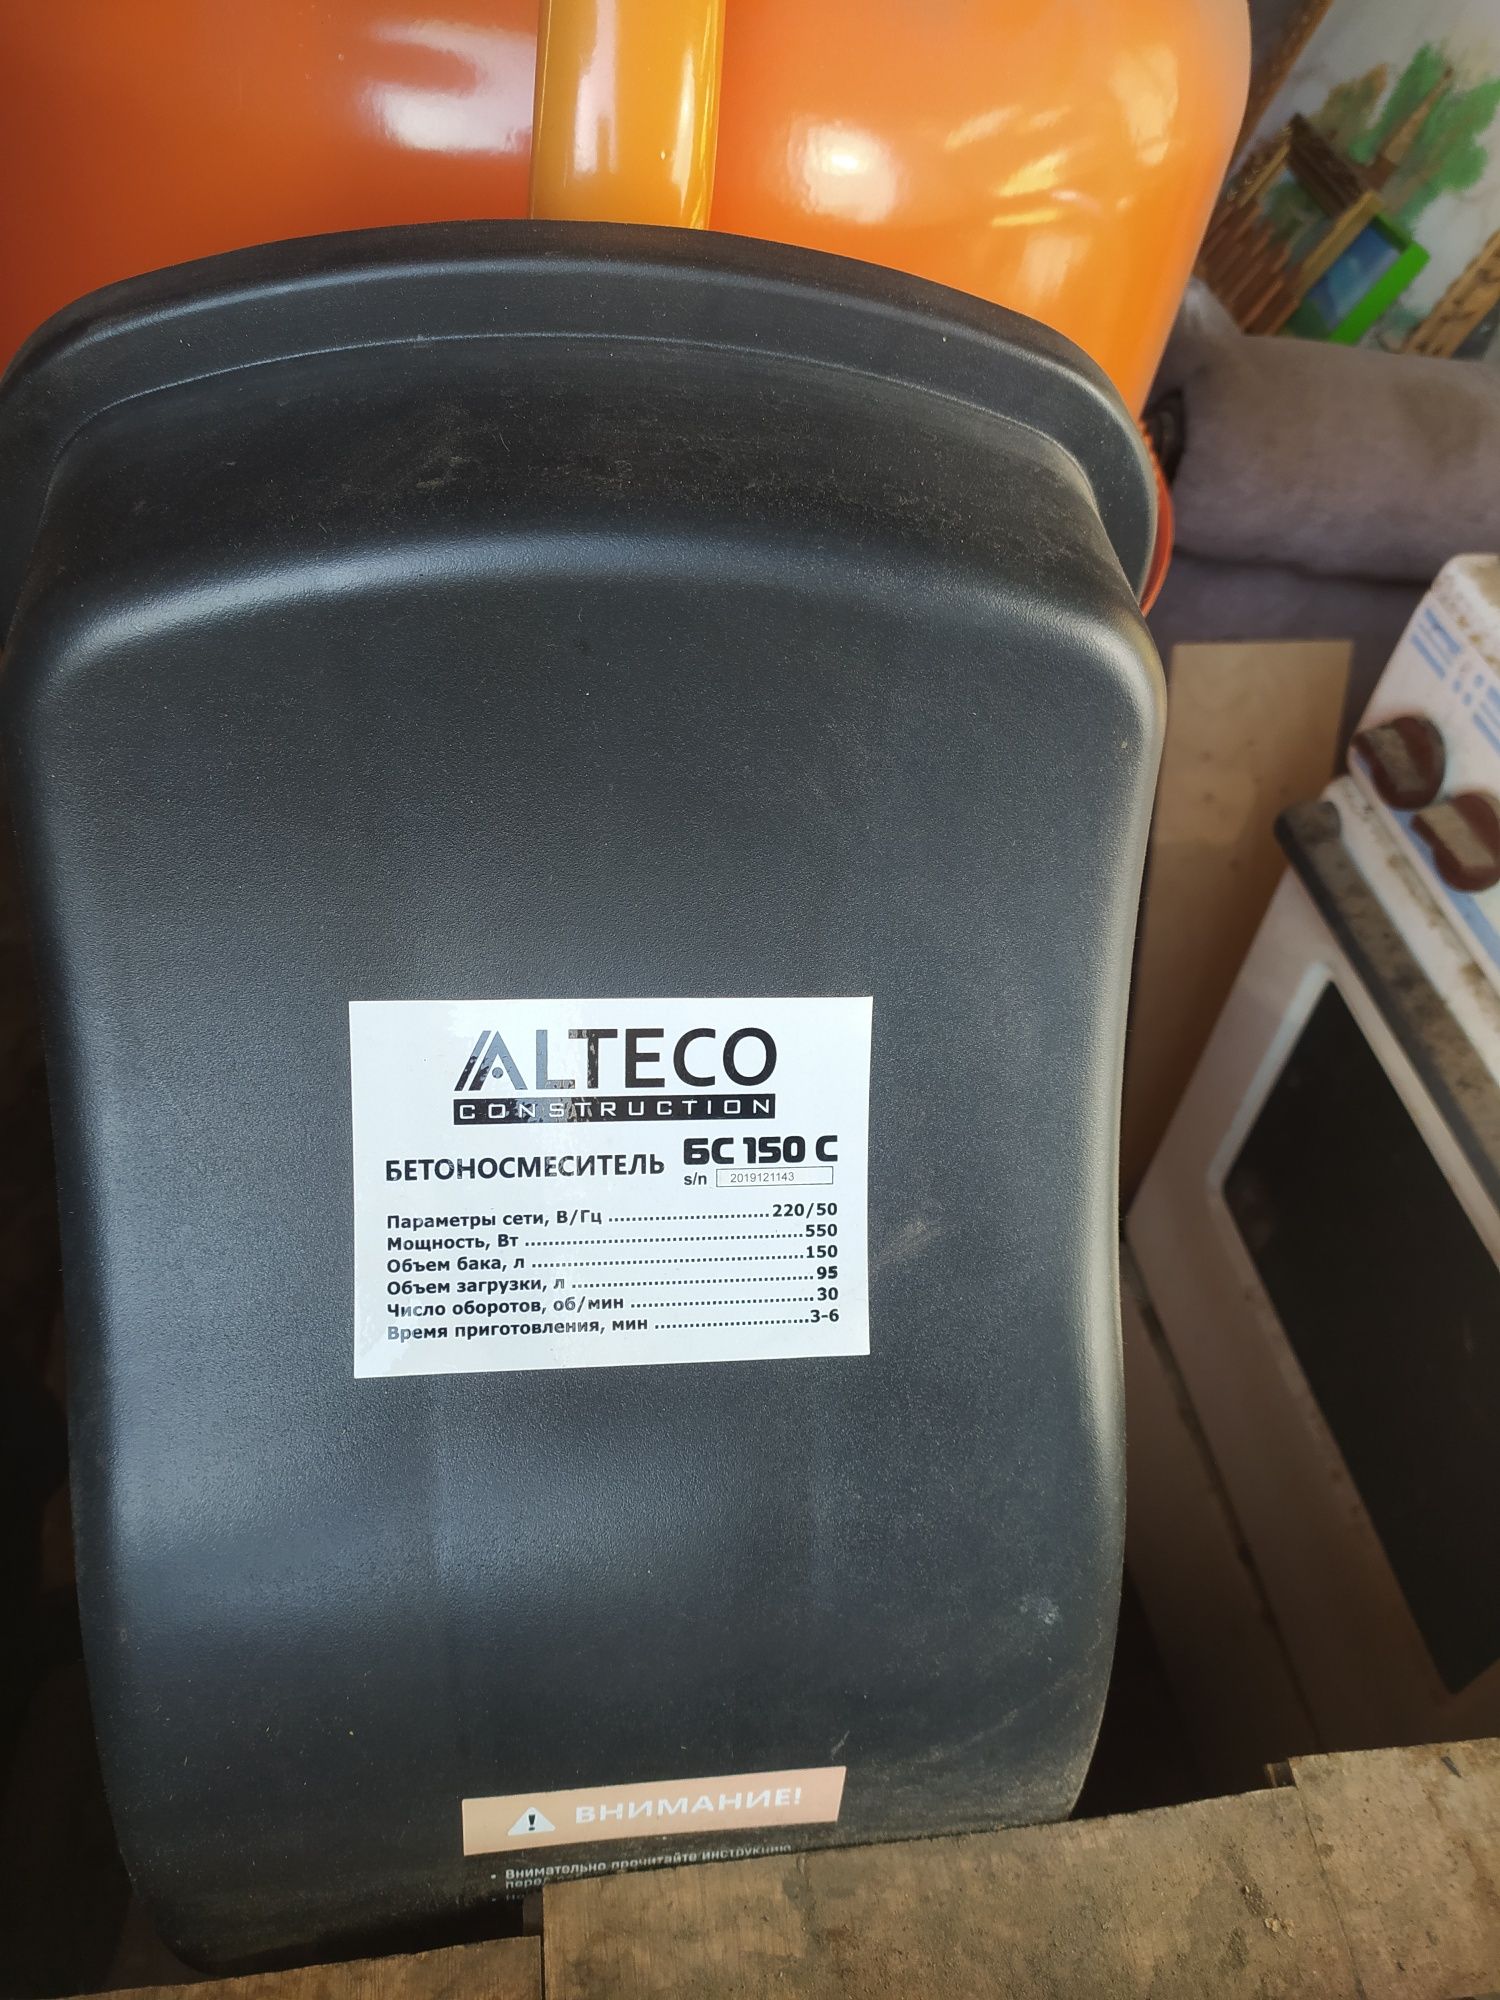 Бетономешалка Алтеко новая на 150 литров, венец чугунный.